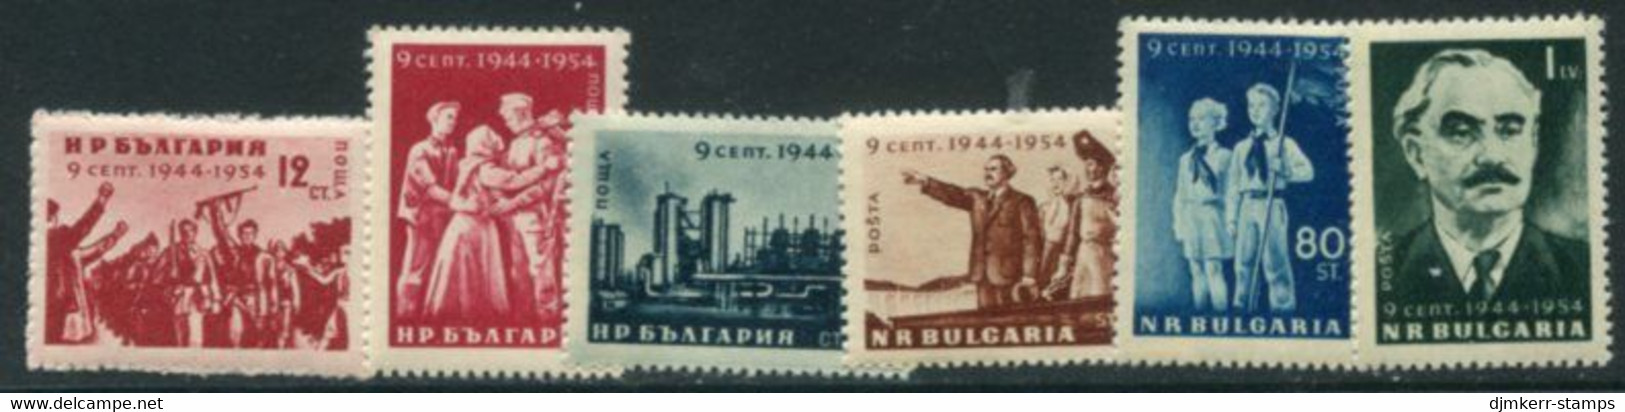 BULGARIA 1954 Liberation Anniversary MNH / ** .  Michel 921-26 - Nuovi